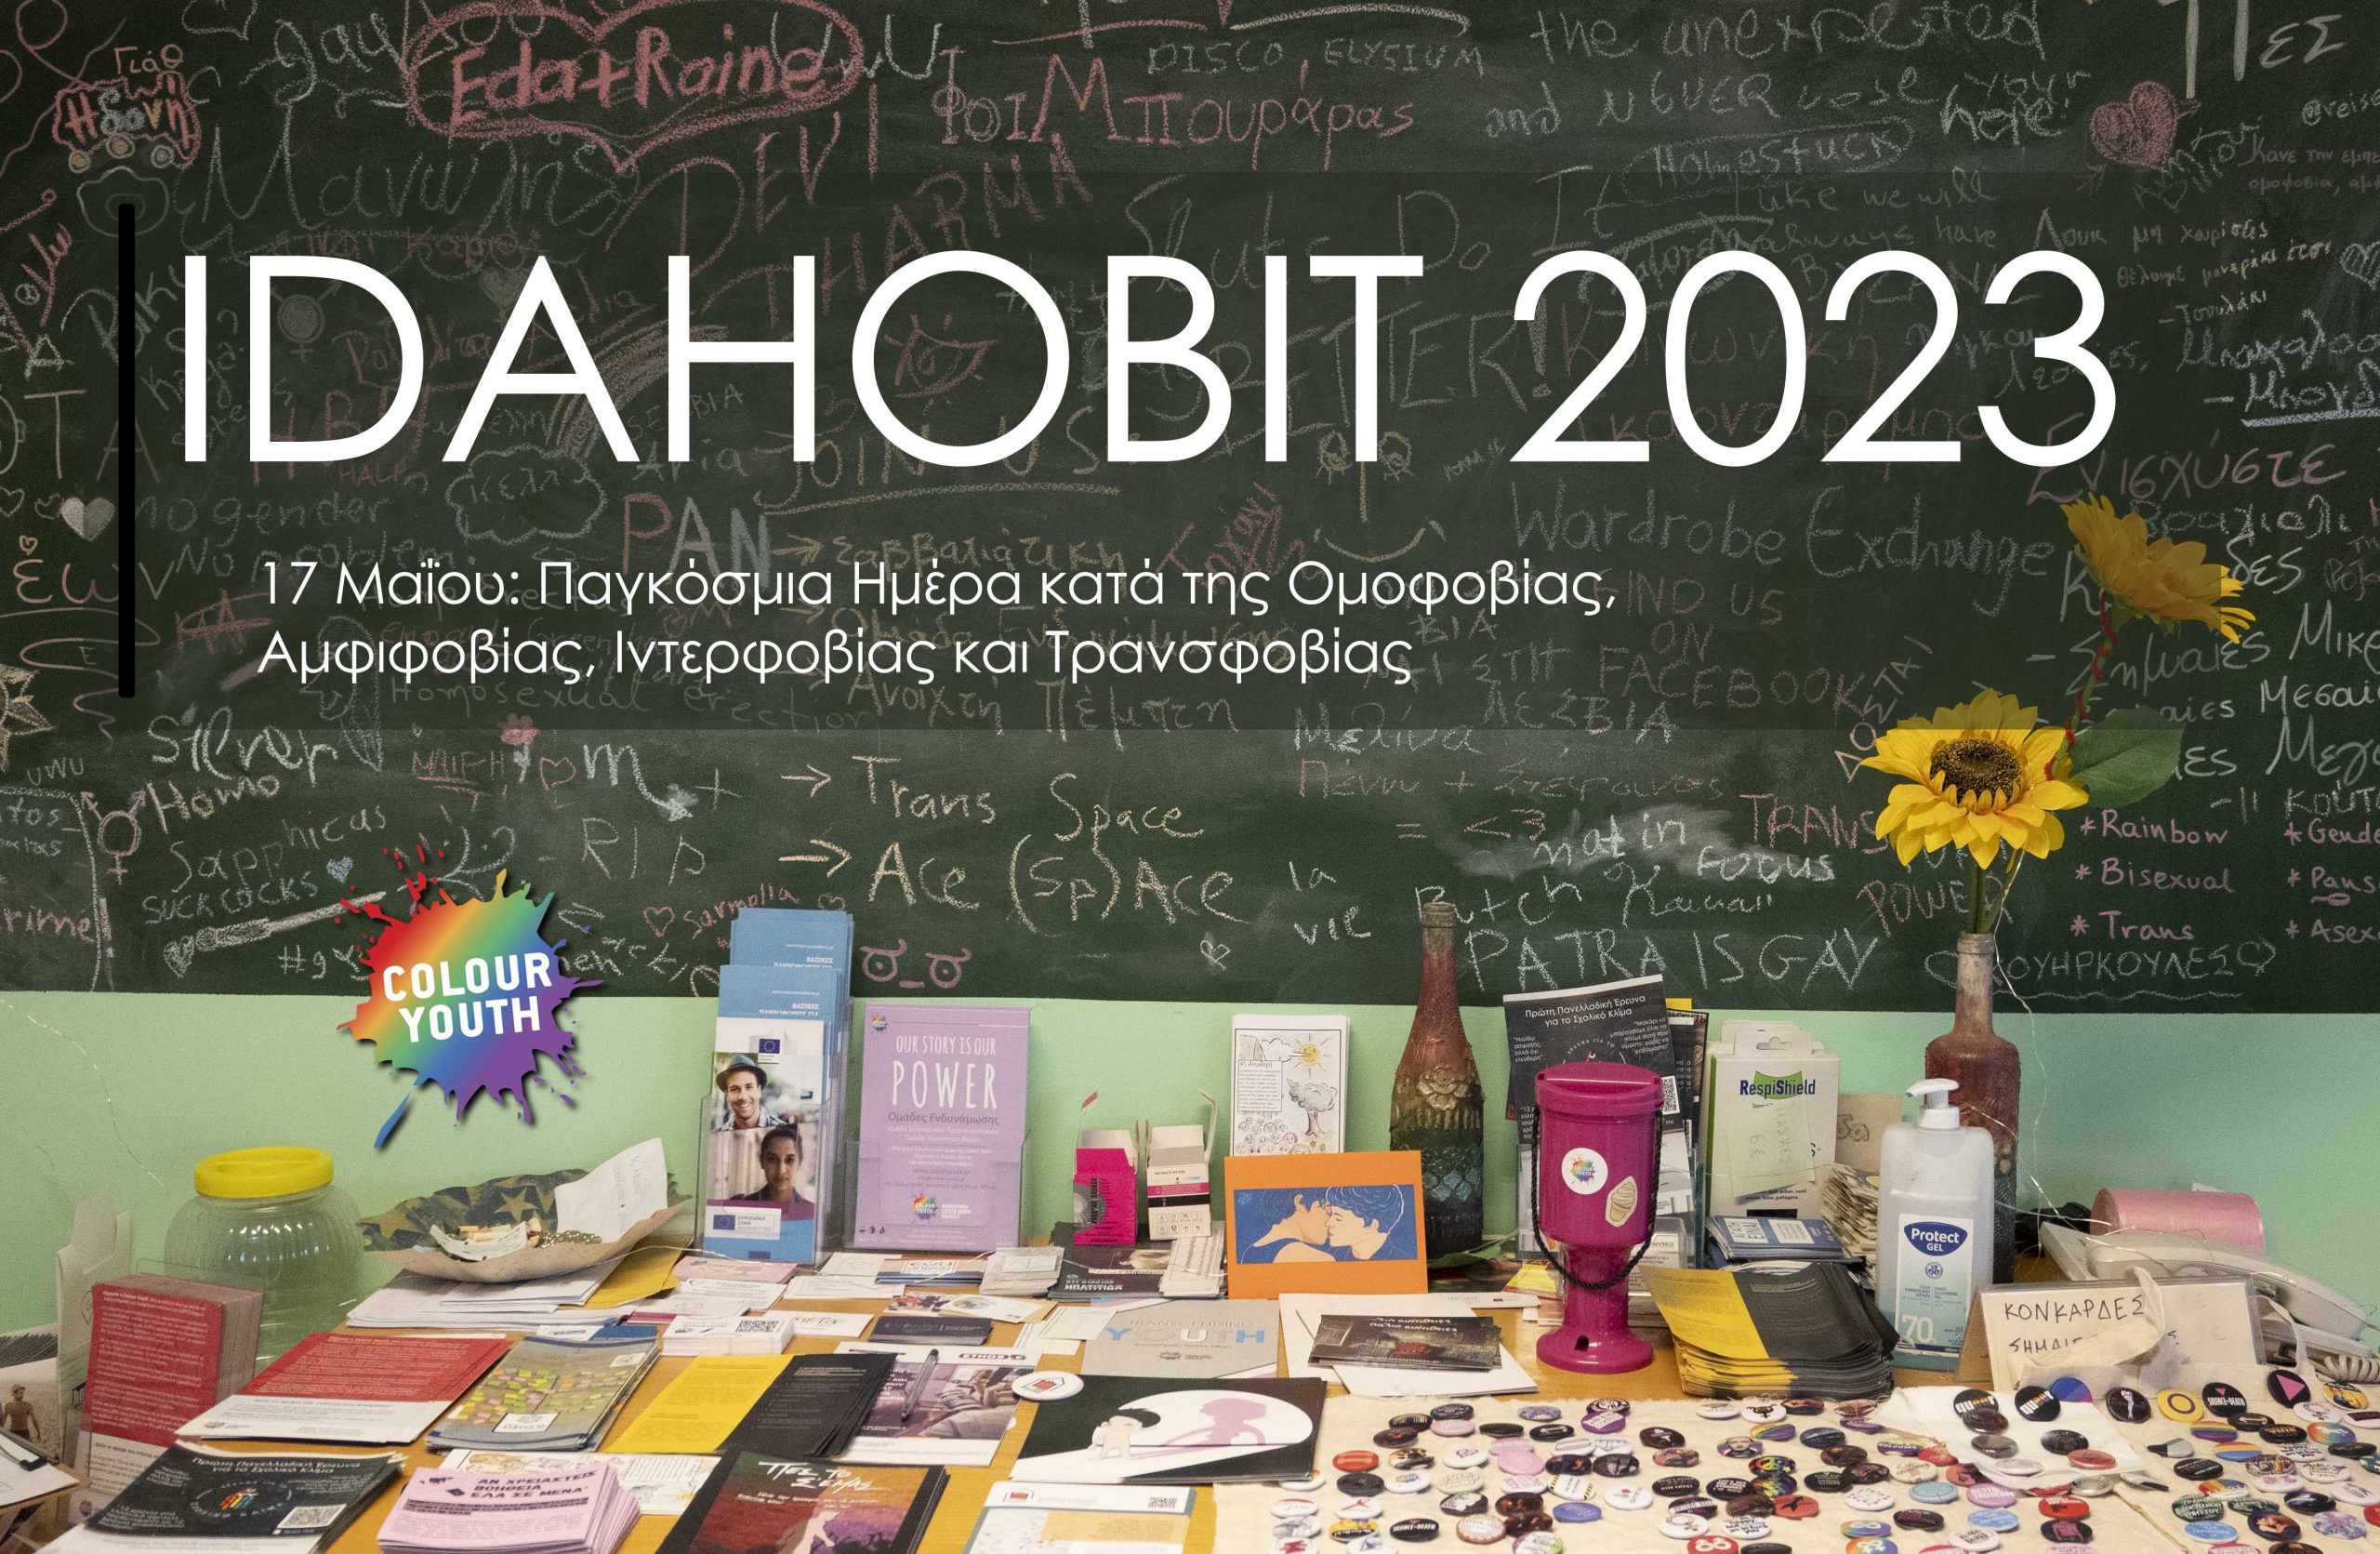 IDAHOBIT 2023 | Τα δικαιώματα μου δεν είναι άποψη